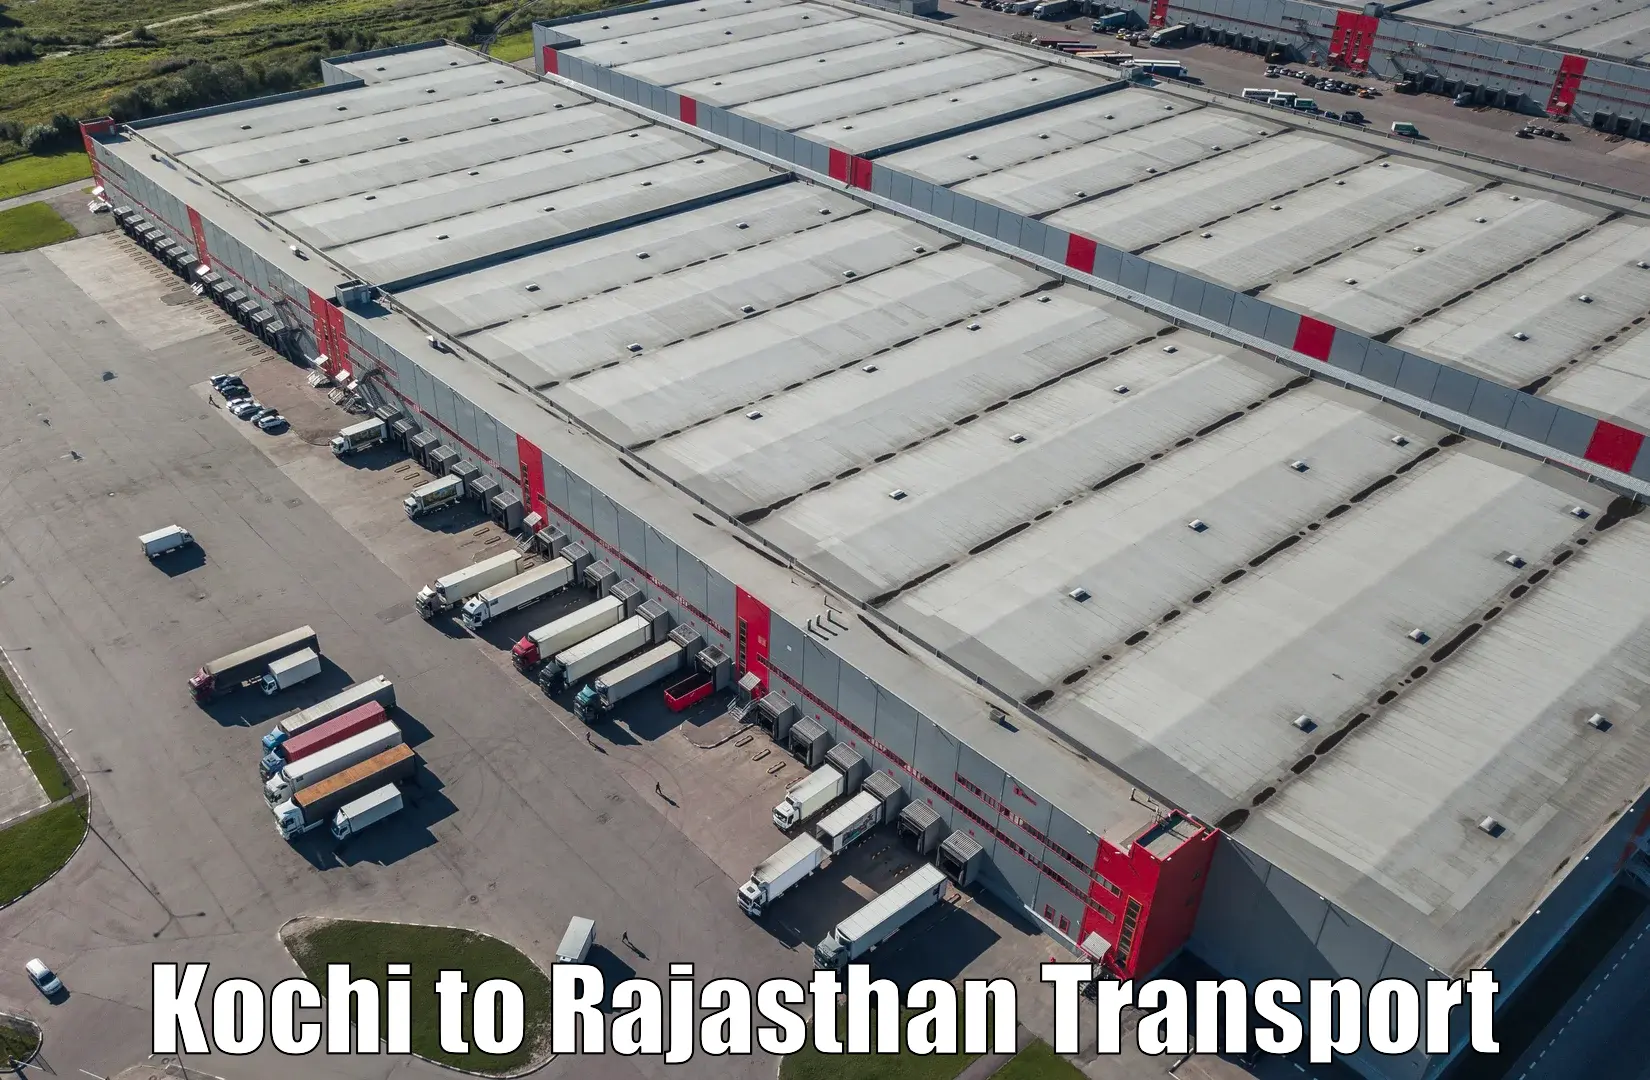 Daily transport service Kochi to Nimbahera